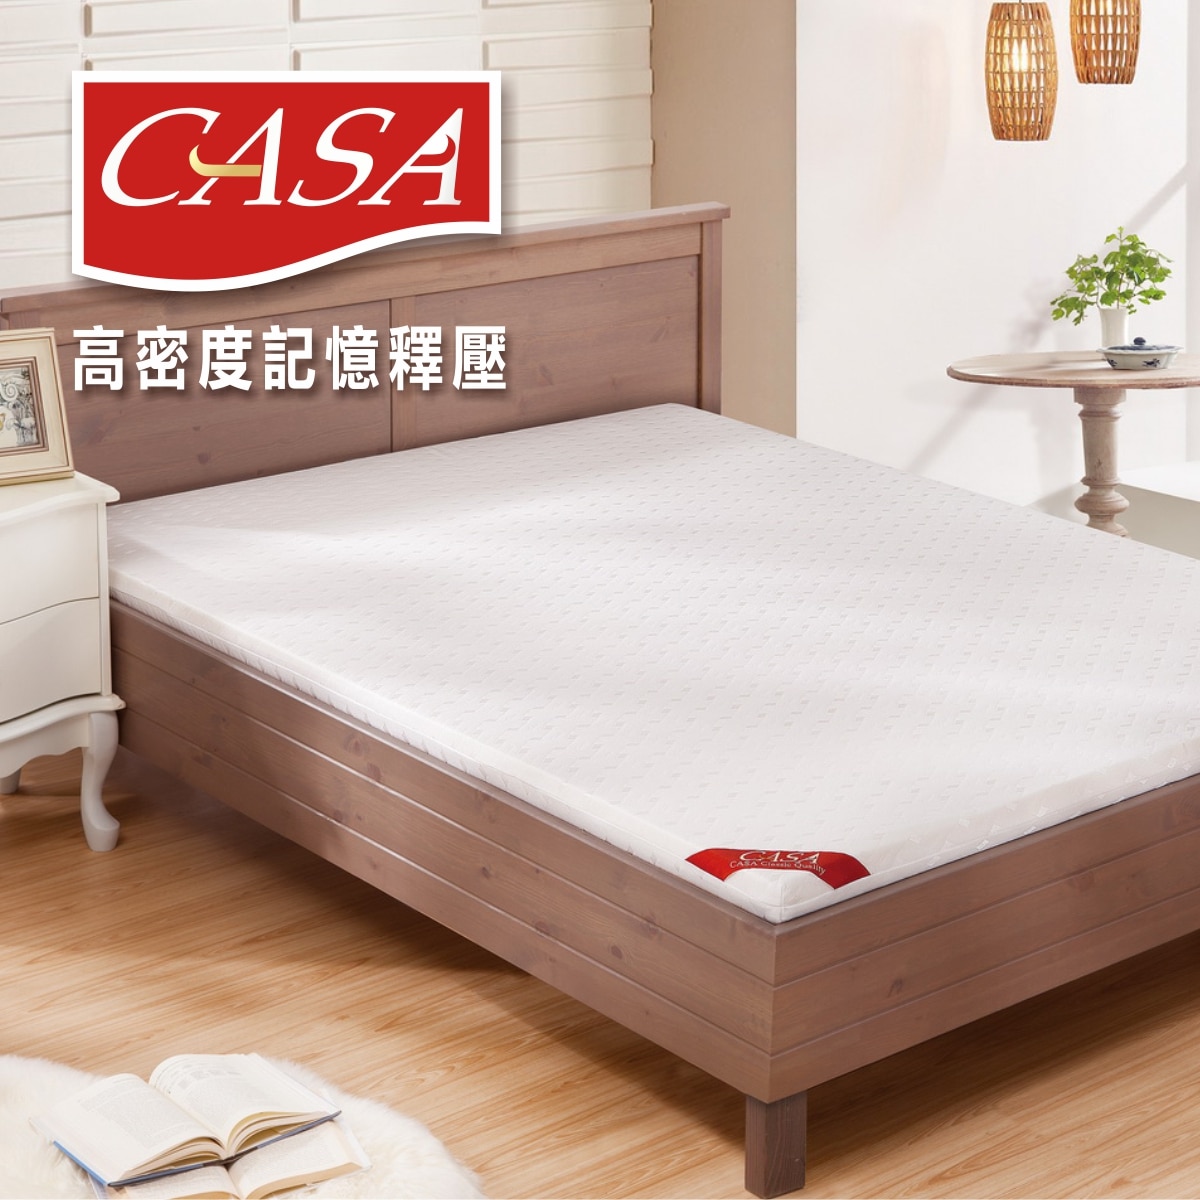 CASA單人記憶釋壓床墊為高密度記憶釋壓床墊。